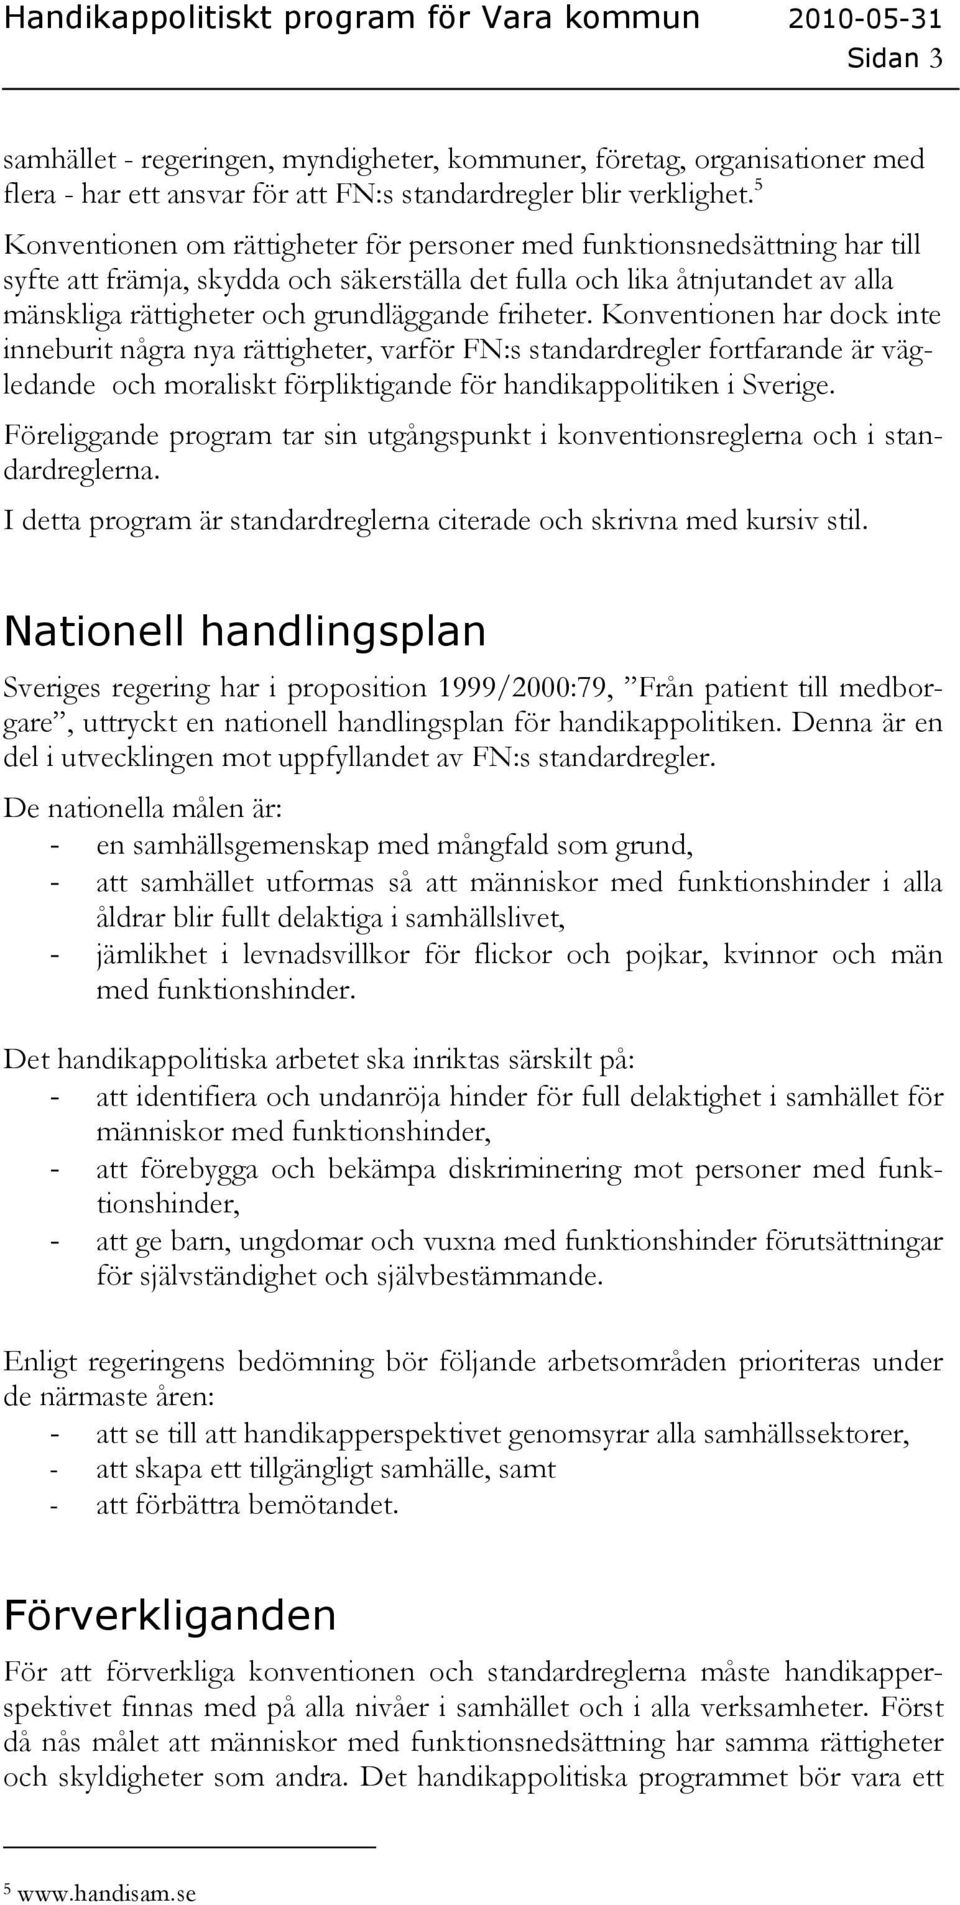 friheter. Konventionen har dock inte inneburit några nya rättigheter, varför FN:s standardregler fortfarande är vägledande och moraliskt förpliktigande för handikappolitiken i Sverige.